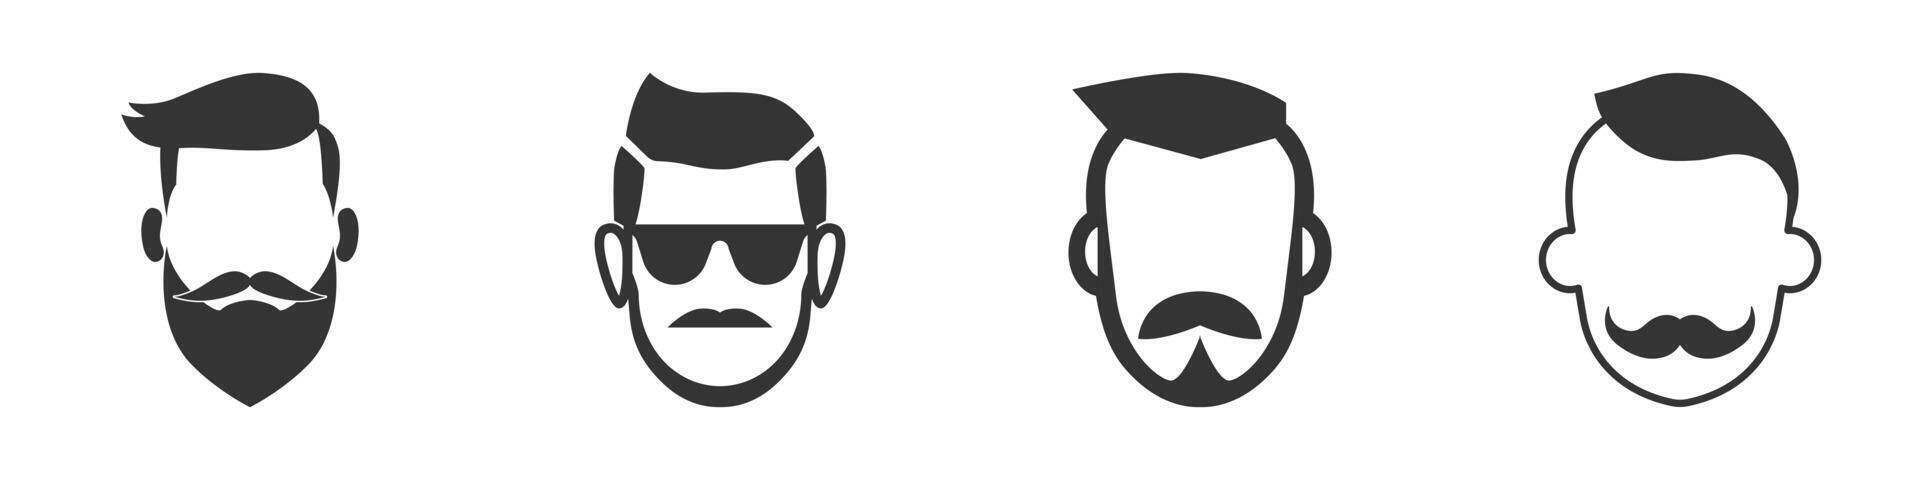 silhuett av en mannens huvud med en mustasch. vektor illustration.